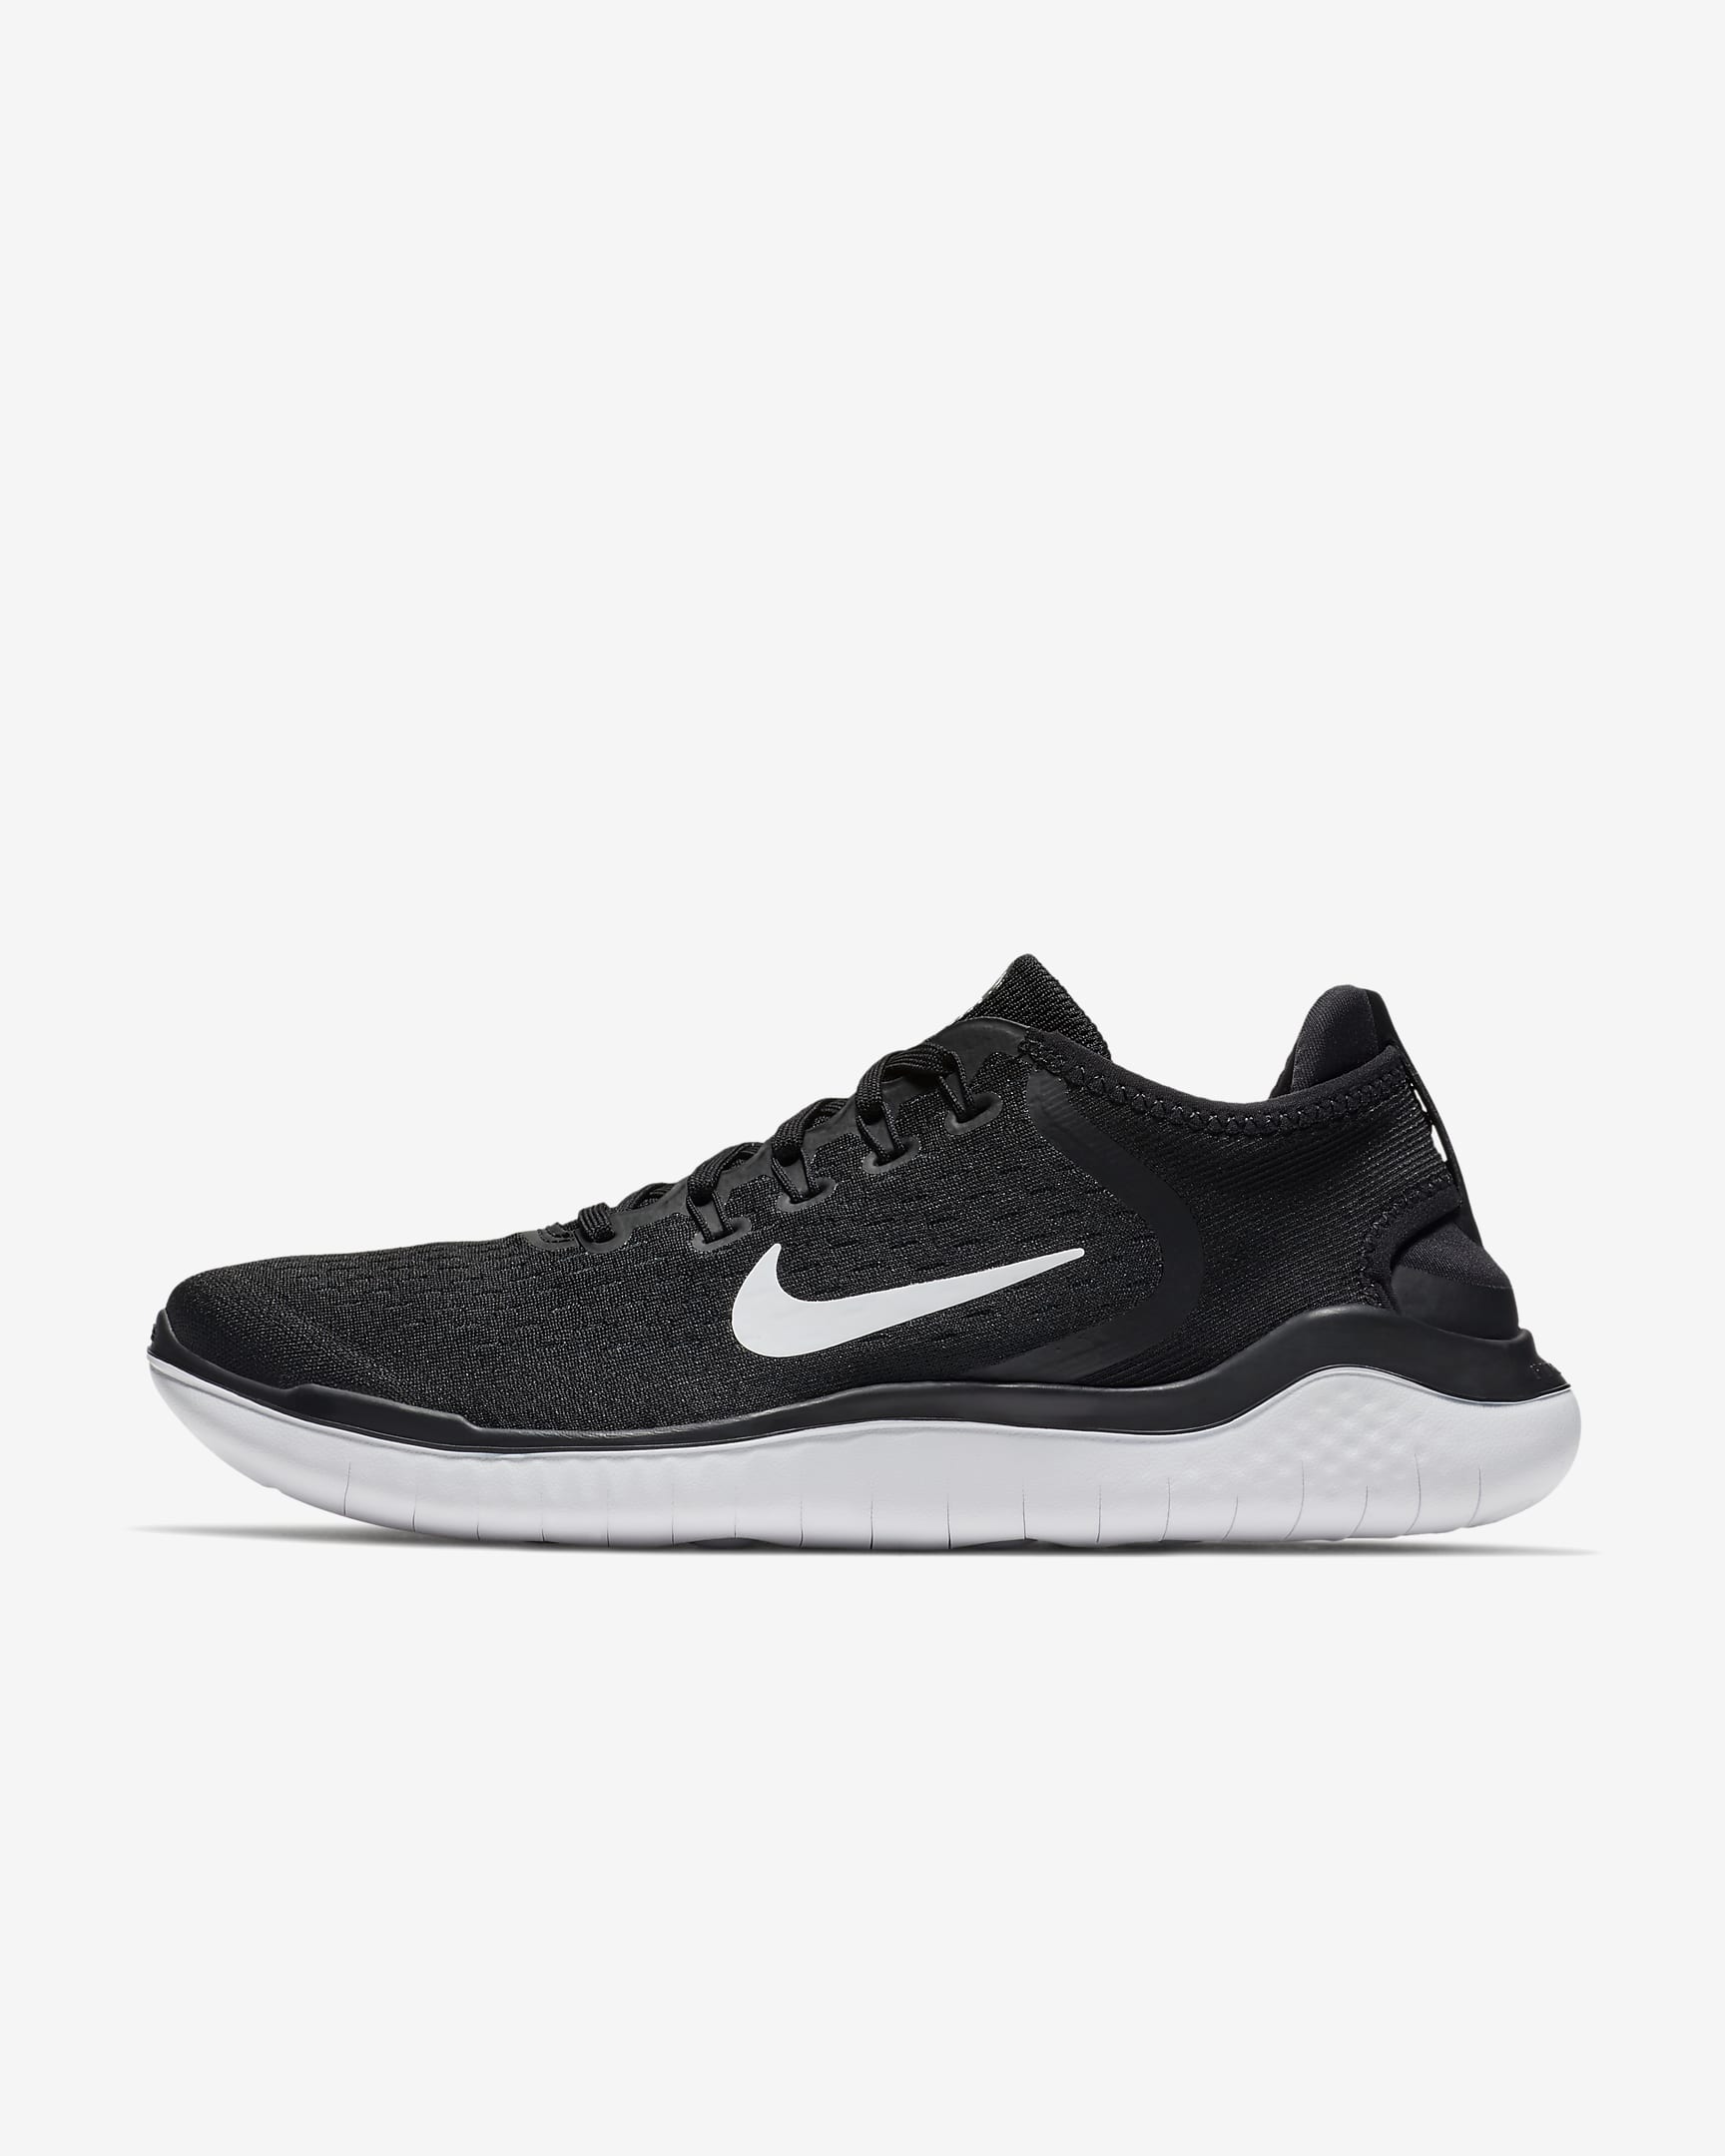 Nike Free Run 2018 Men's Road Running Shoes - Black/White